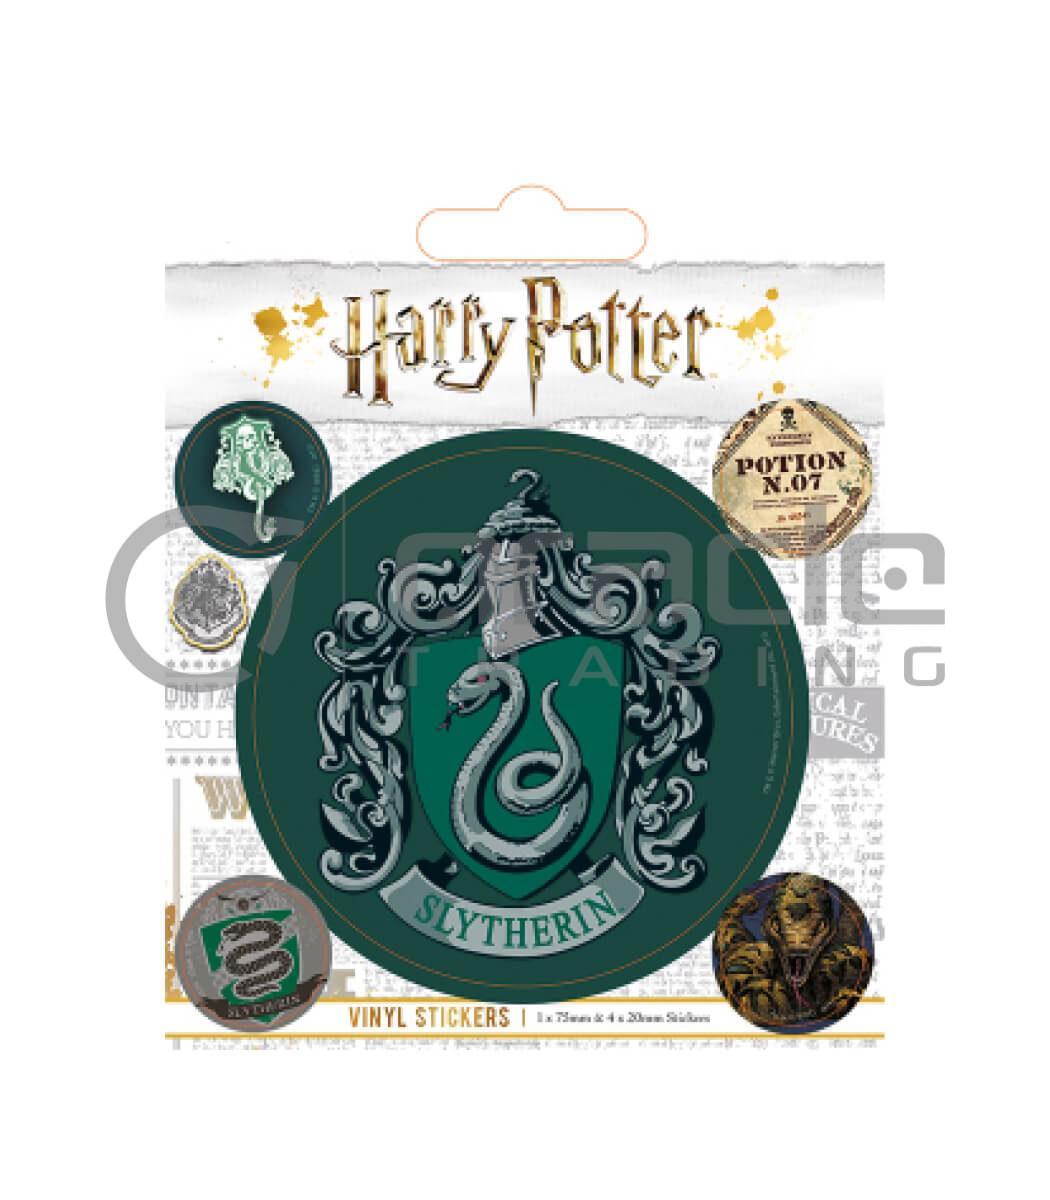 Harry Potter Slytherin Vinyl Sticker Pack